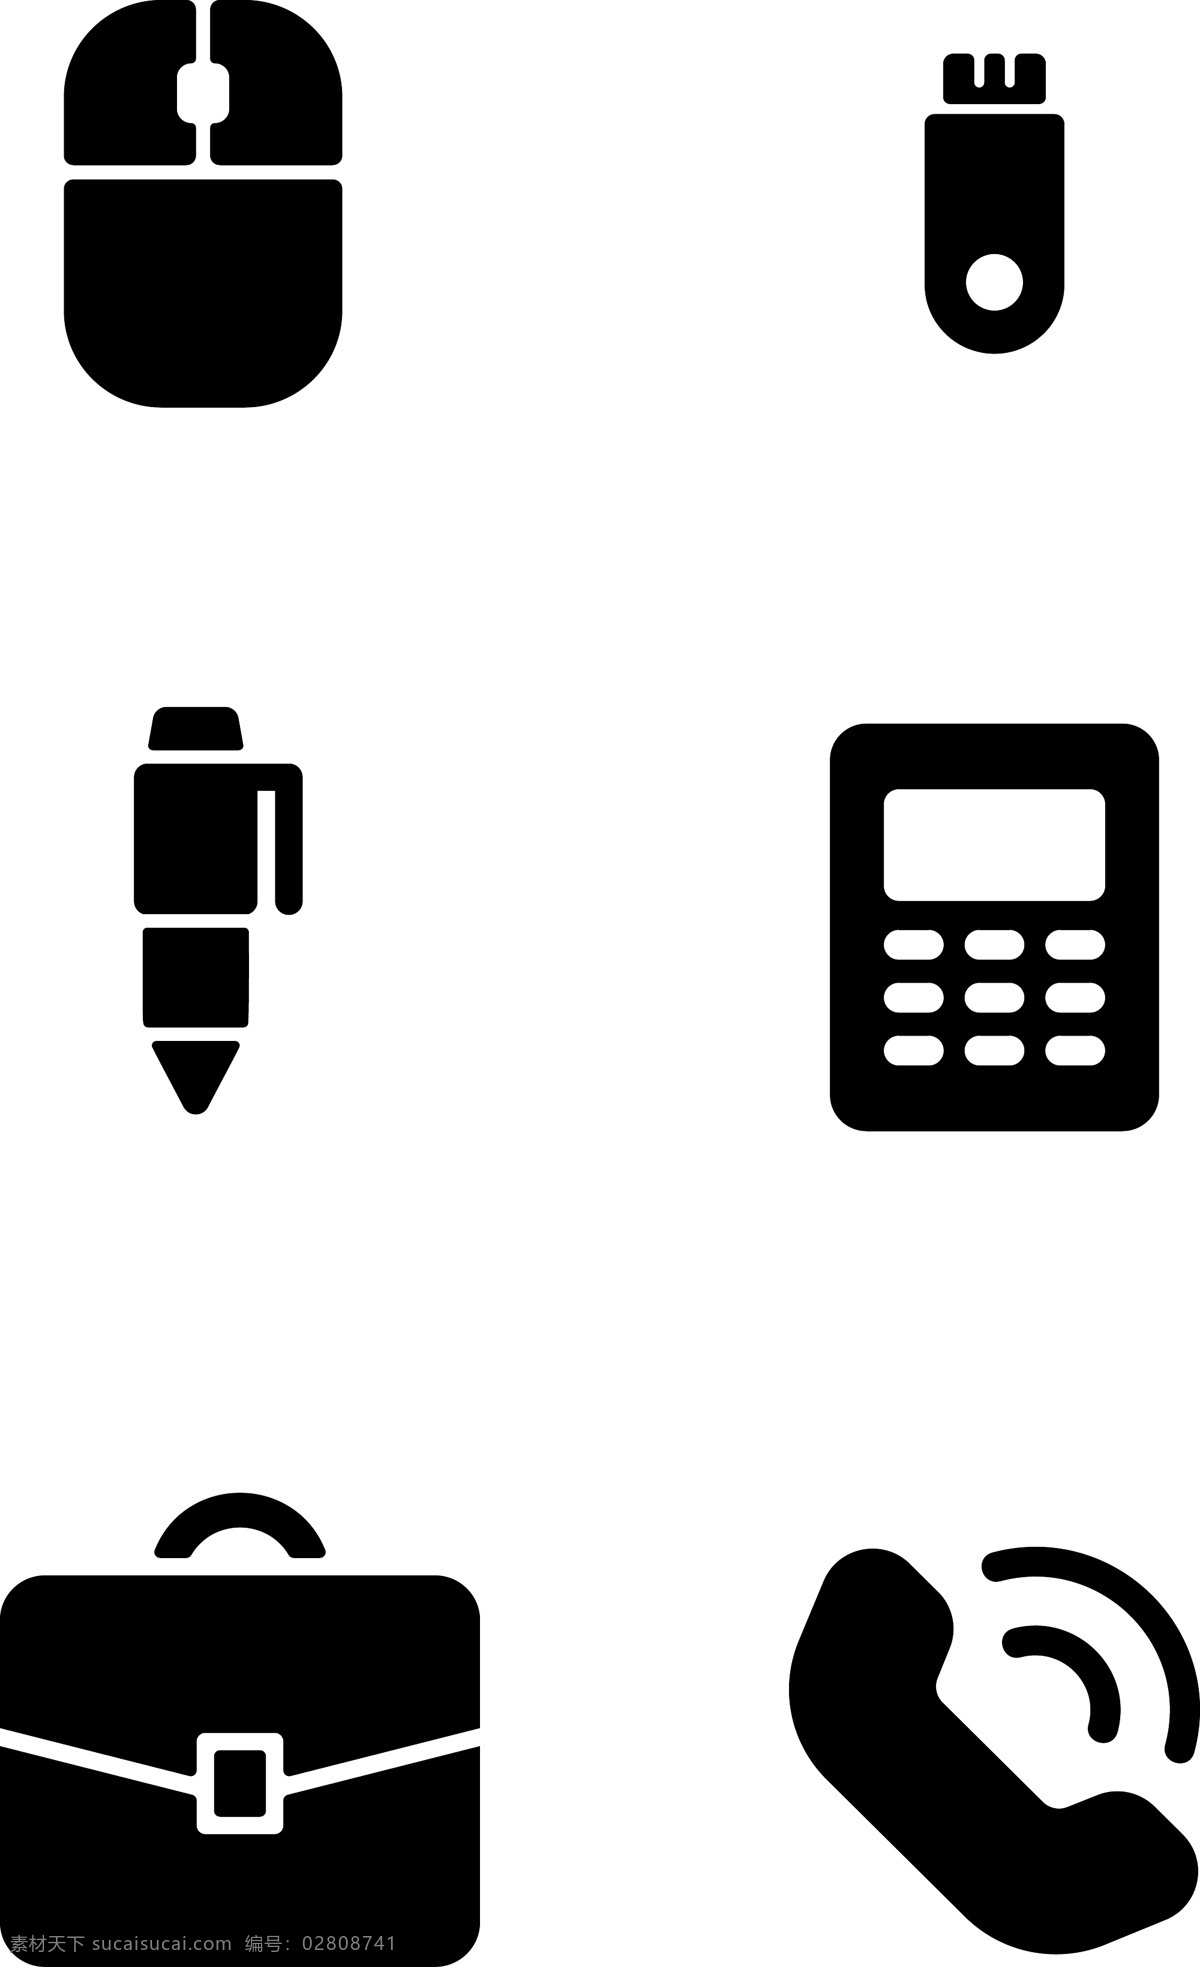 商务 办公用品 免 扣 图标 公司用品 鼠标 u盘 钢笔 计算机 公文包 电话 可分开使用 清晰明了 免扣